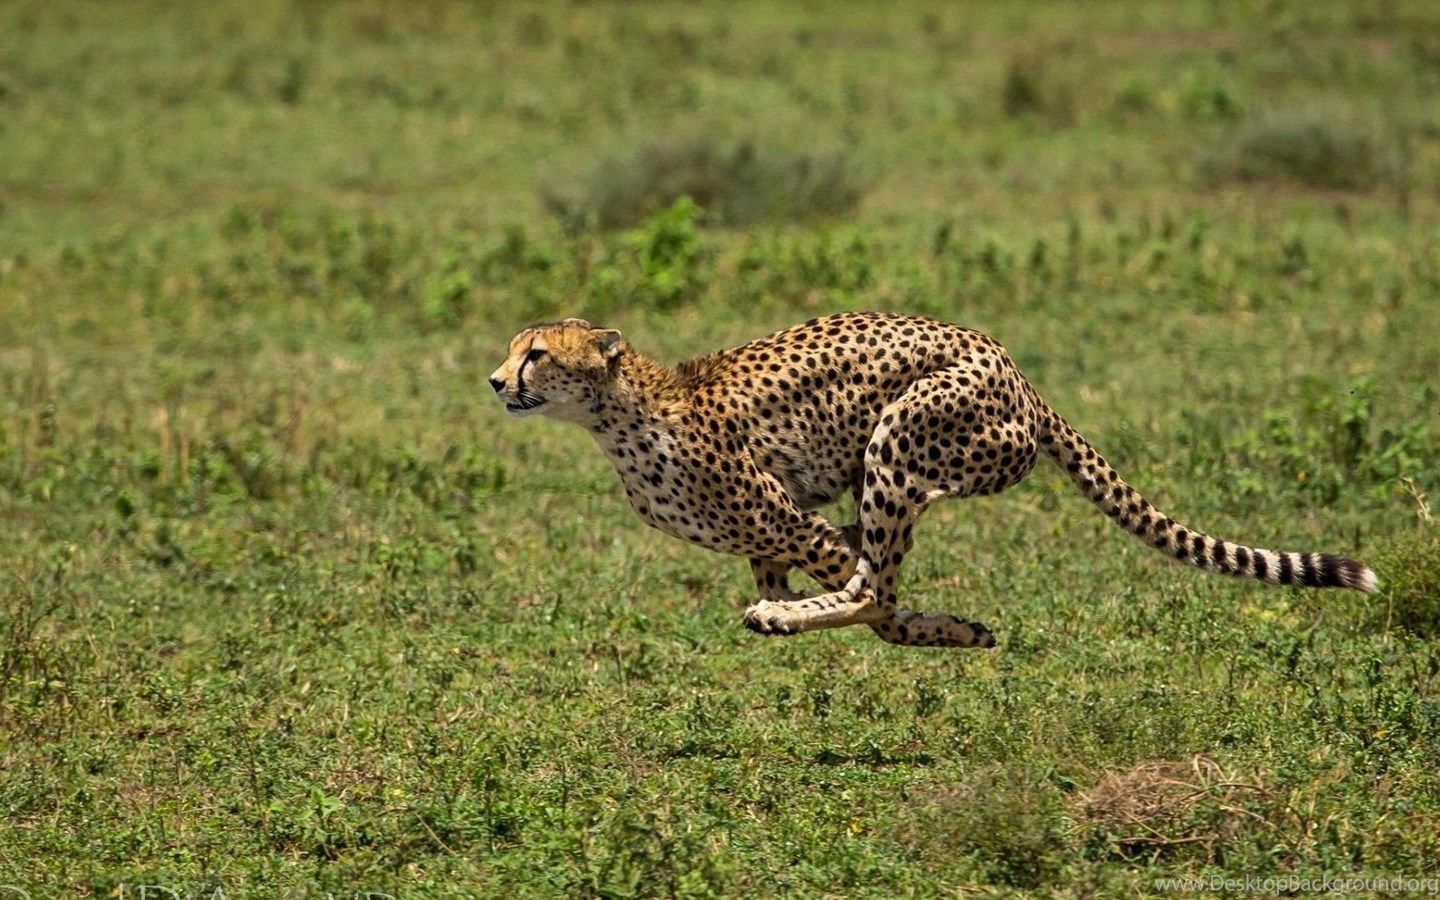 دانلود عکس یوزپلنگ در حال دویدن با کیفیت 4k